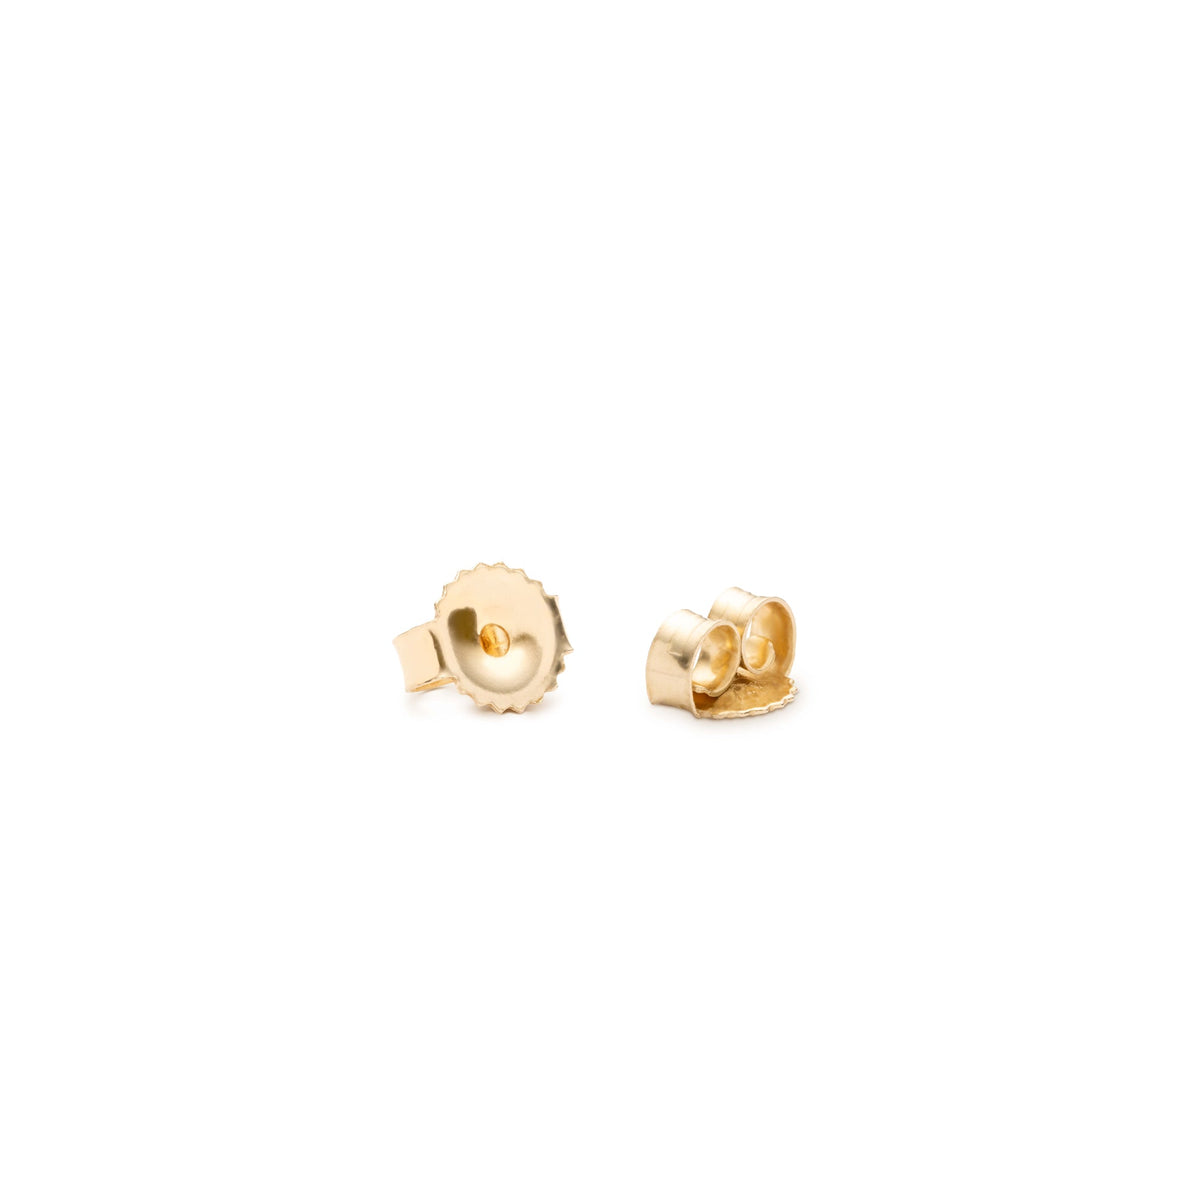 40 20 Sets Gold Earring Backs, Earring Backs Gold, Gold Earring Backs,  Pierced Earring Back, Post Earring Backs, Backs for Earrings, Backs 